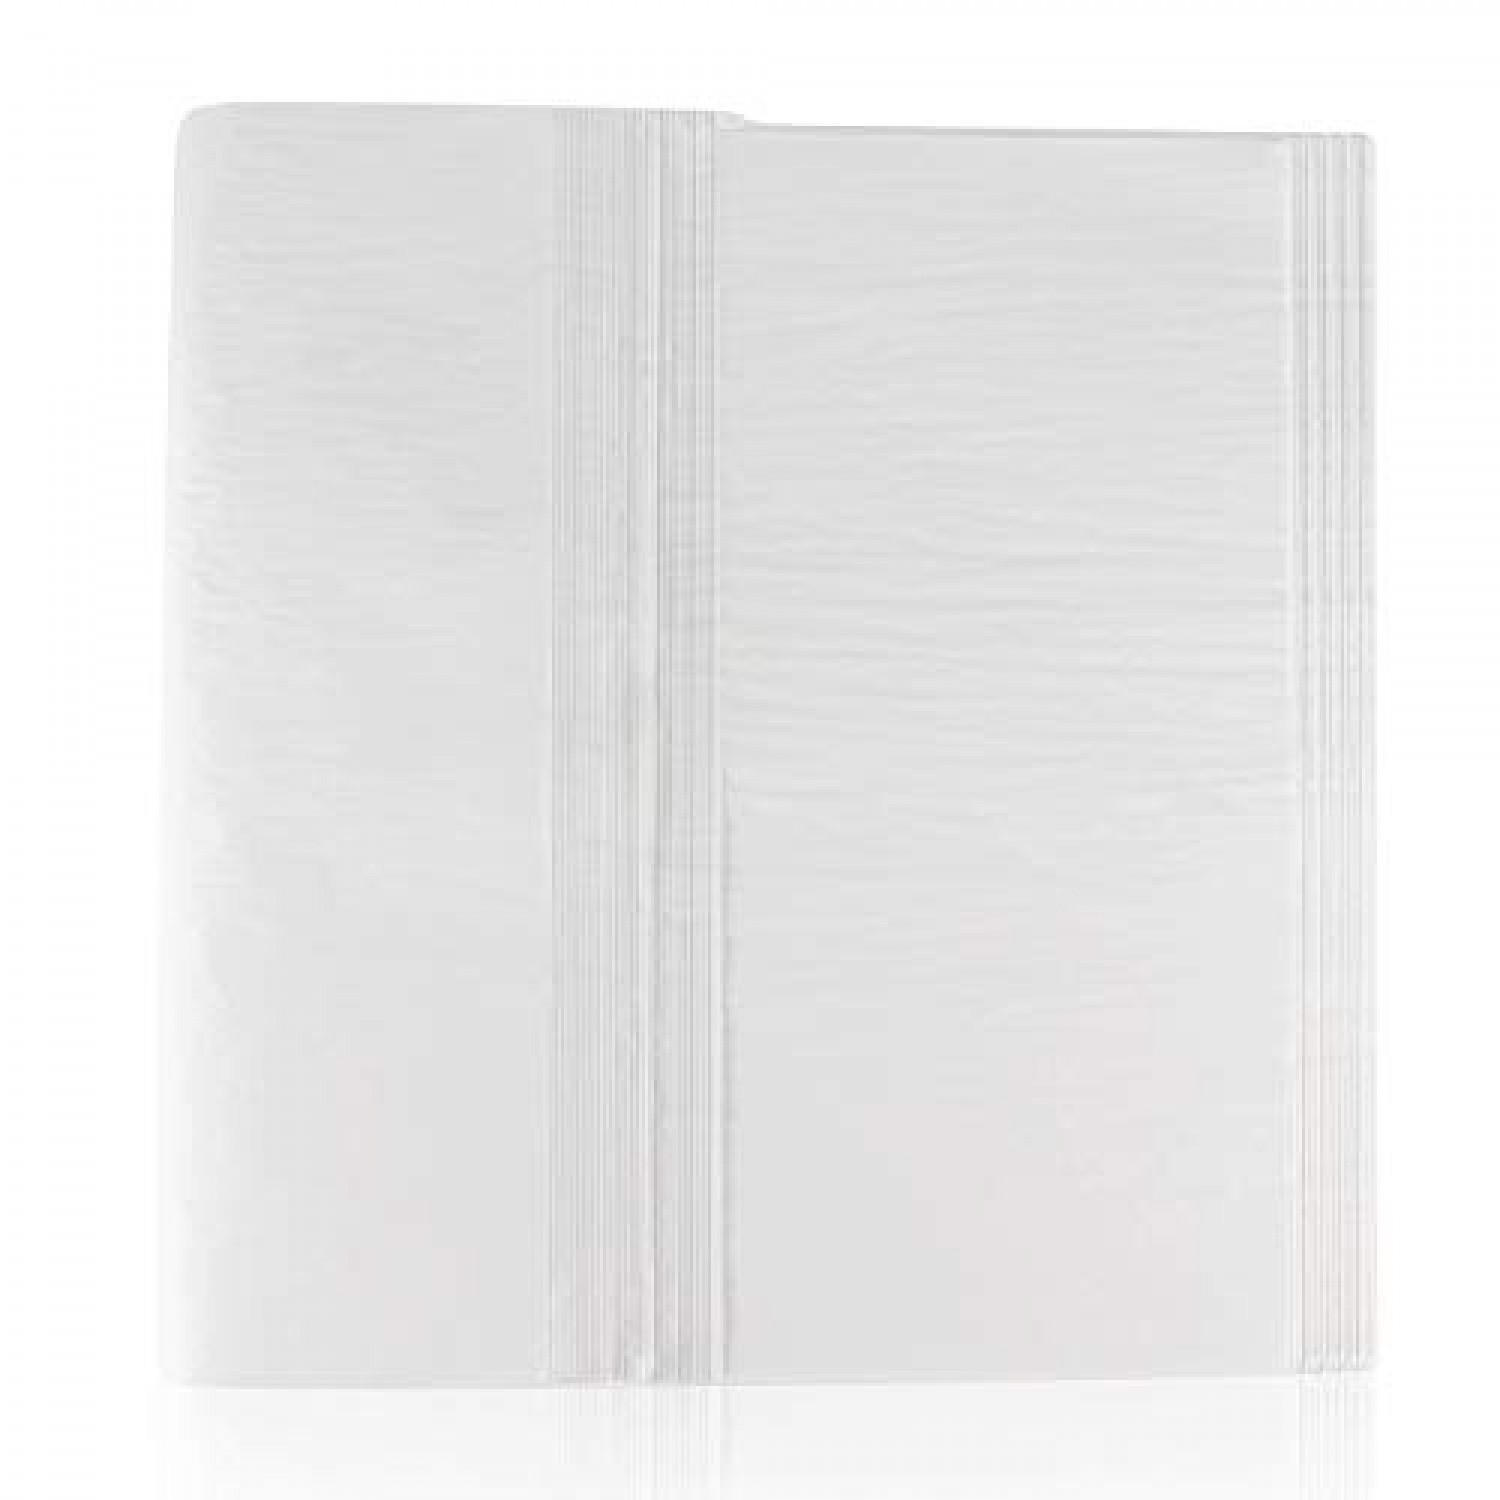  Blisstime 102 Sheets Tissue Paper Gift Wrap Bulk, 19.5